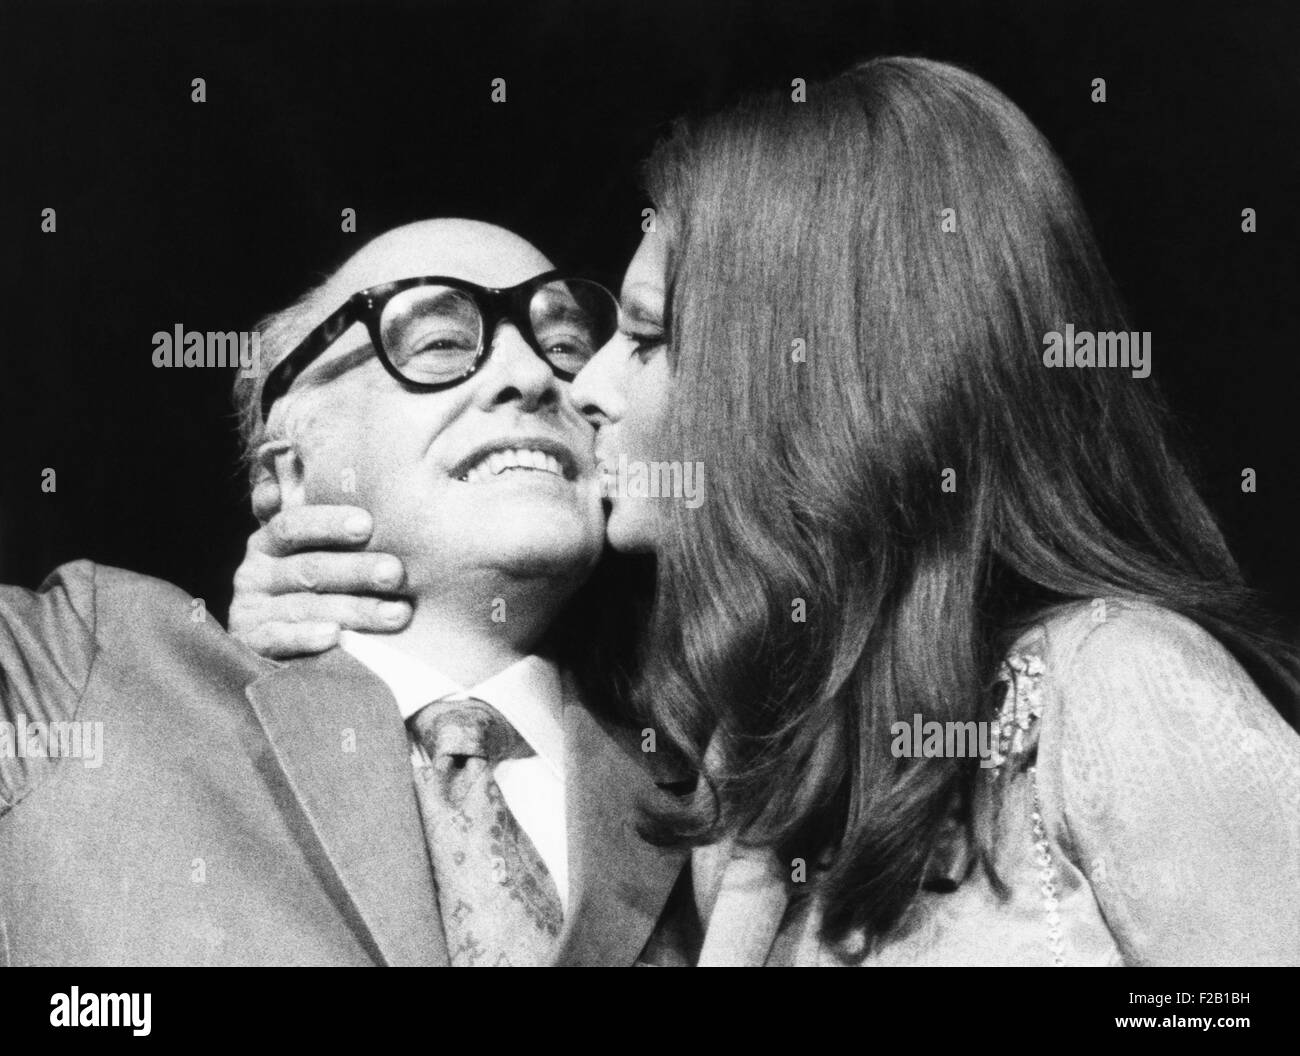 Sophia Loren gibt ihr Ehemann, Filmproduzent Carlo Ponti, einen Kuss auf Pressekonferenz. Sie waren in New York, Sophia Loren Film Sonnenblume, 24. September 1970 zu fördern. (CSU_2015_8_613) Stockfoto